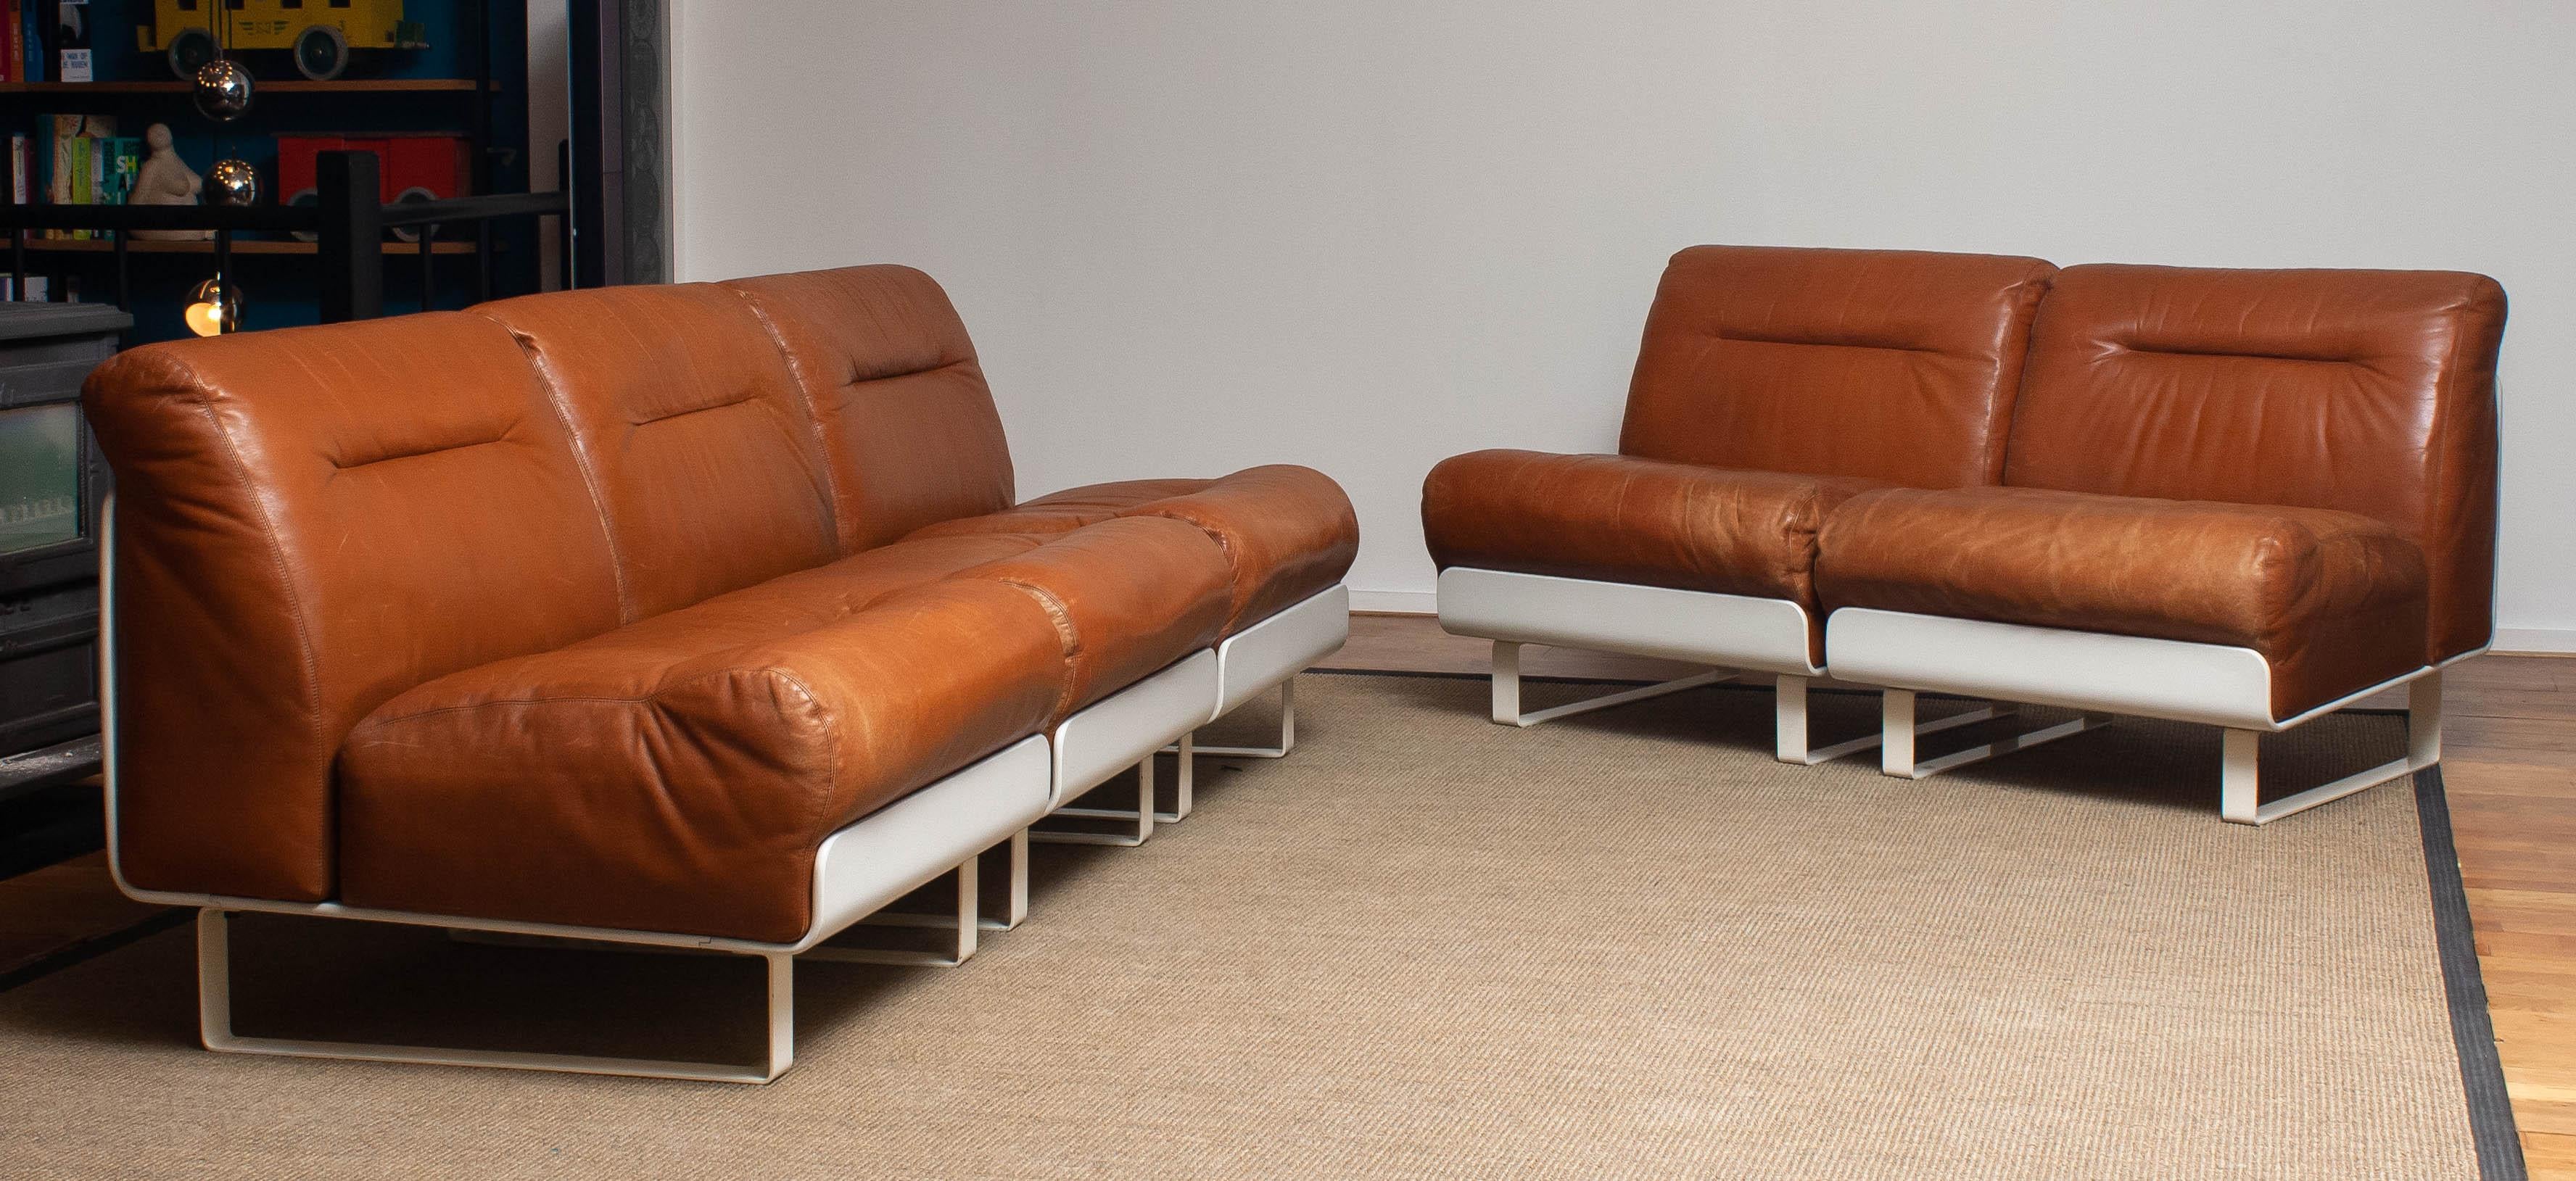 sofa club furniture